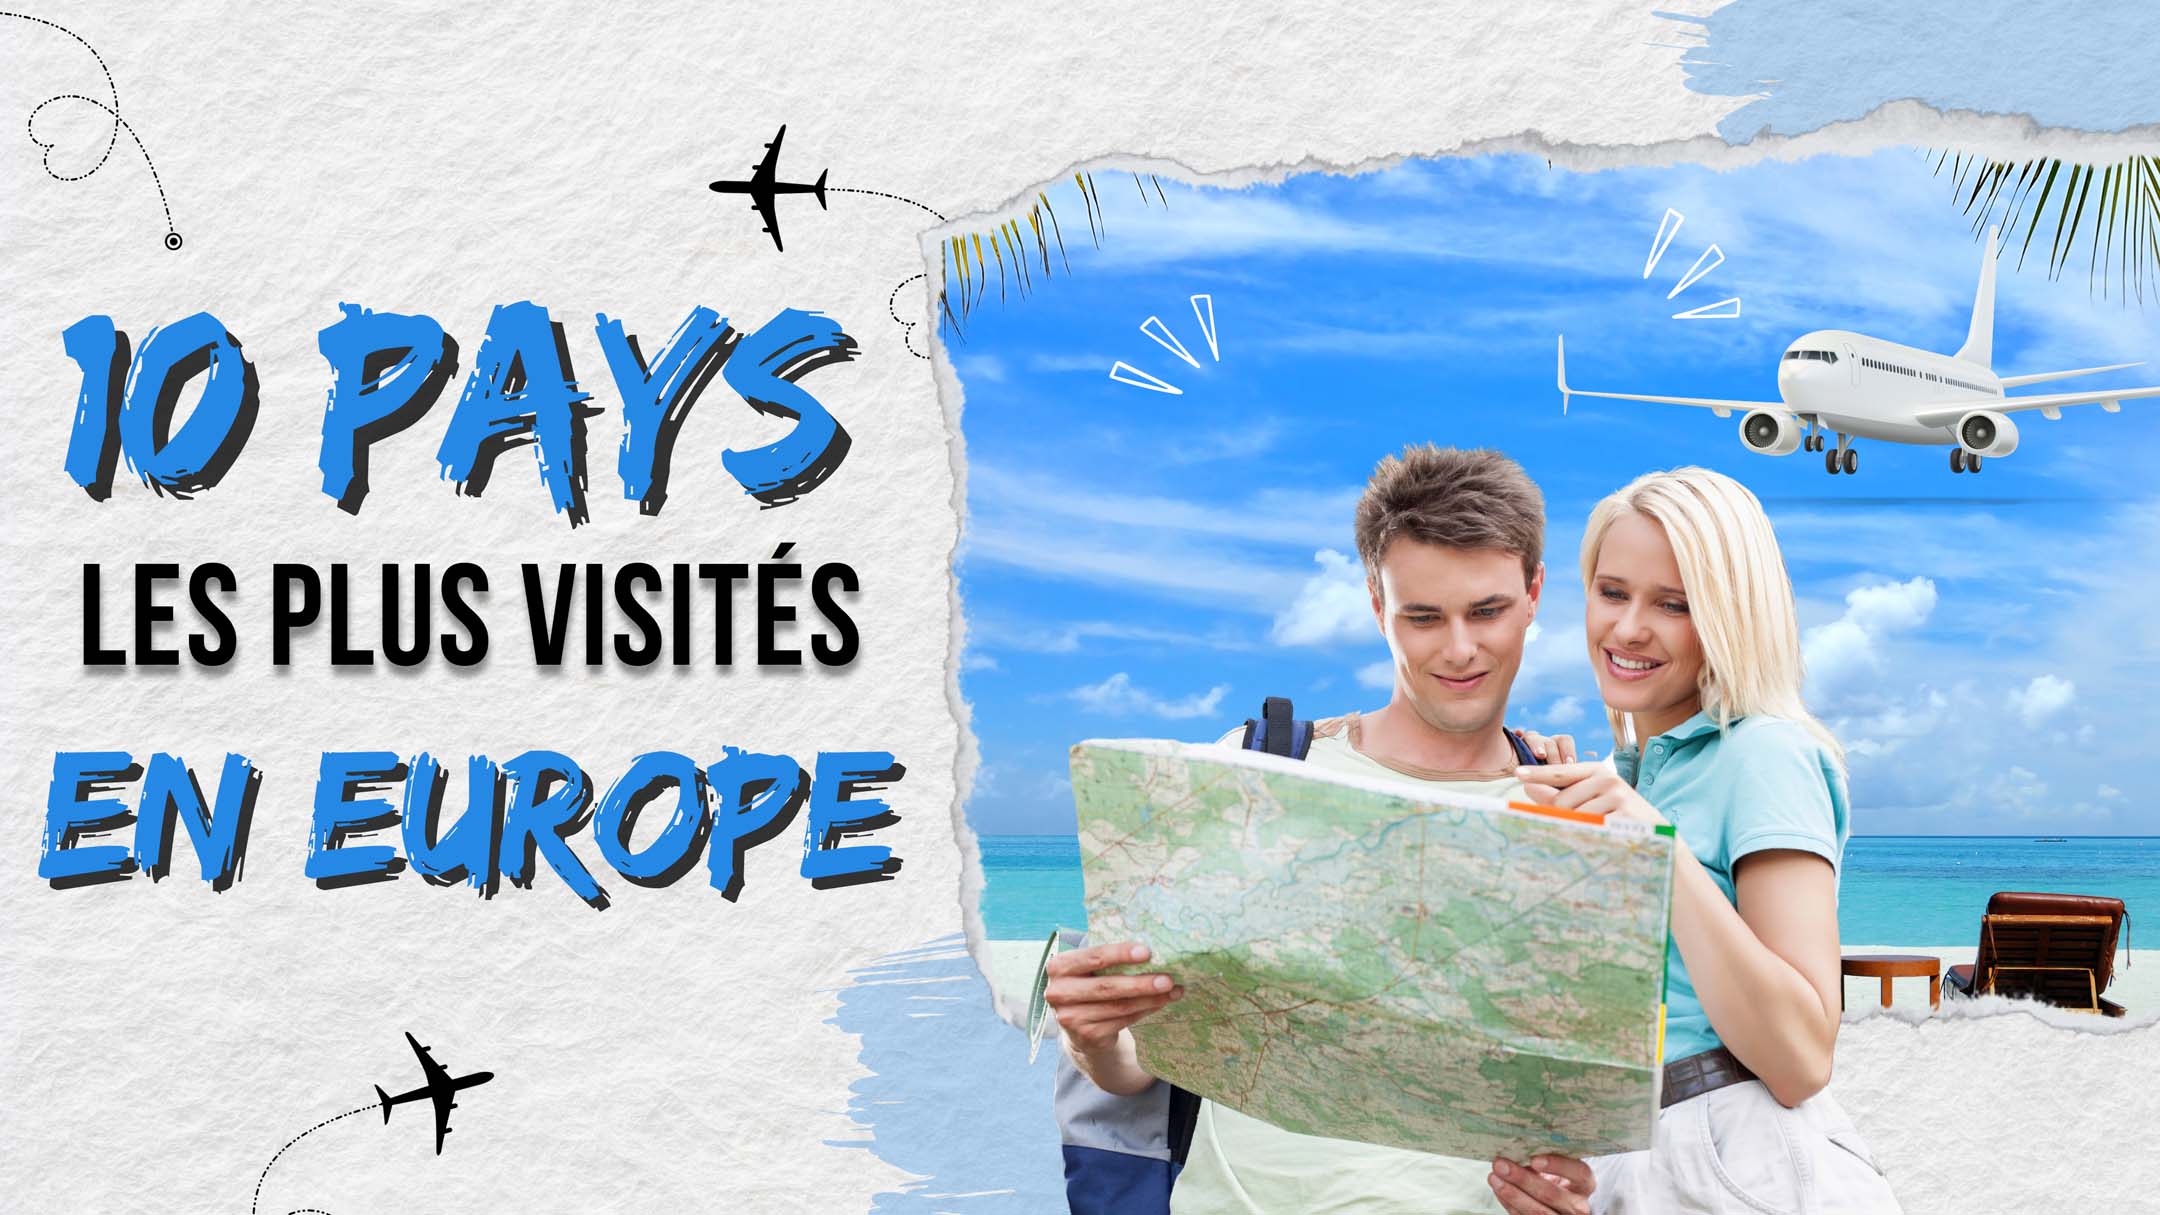 10 pays les plus visités en Europe